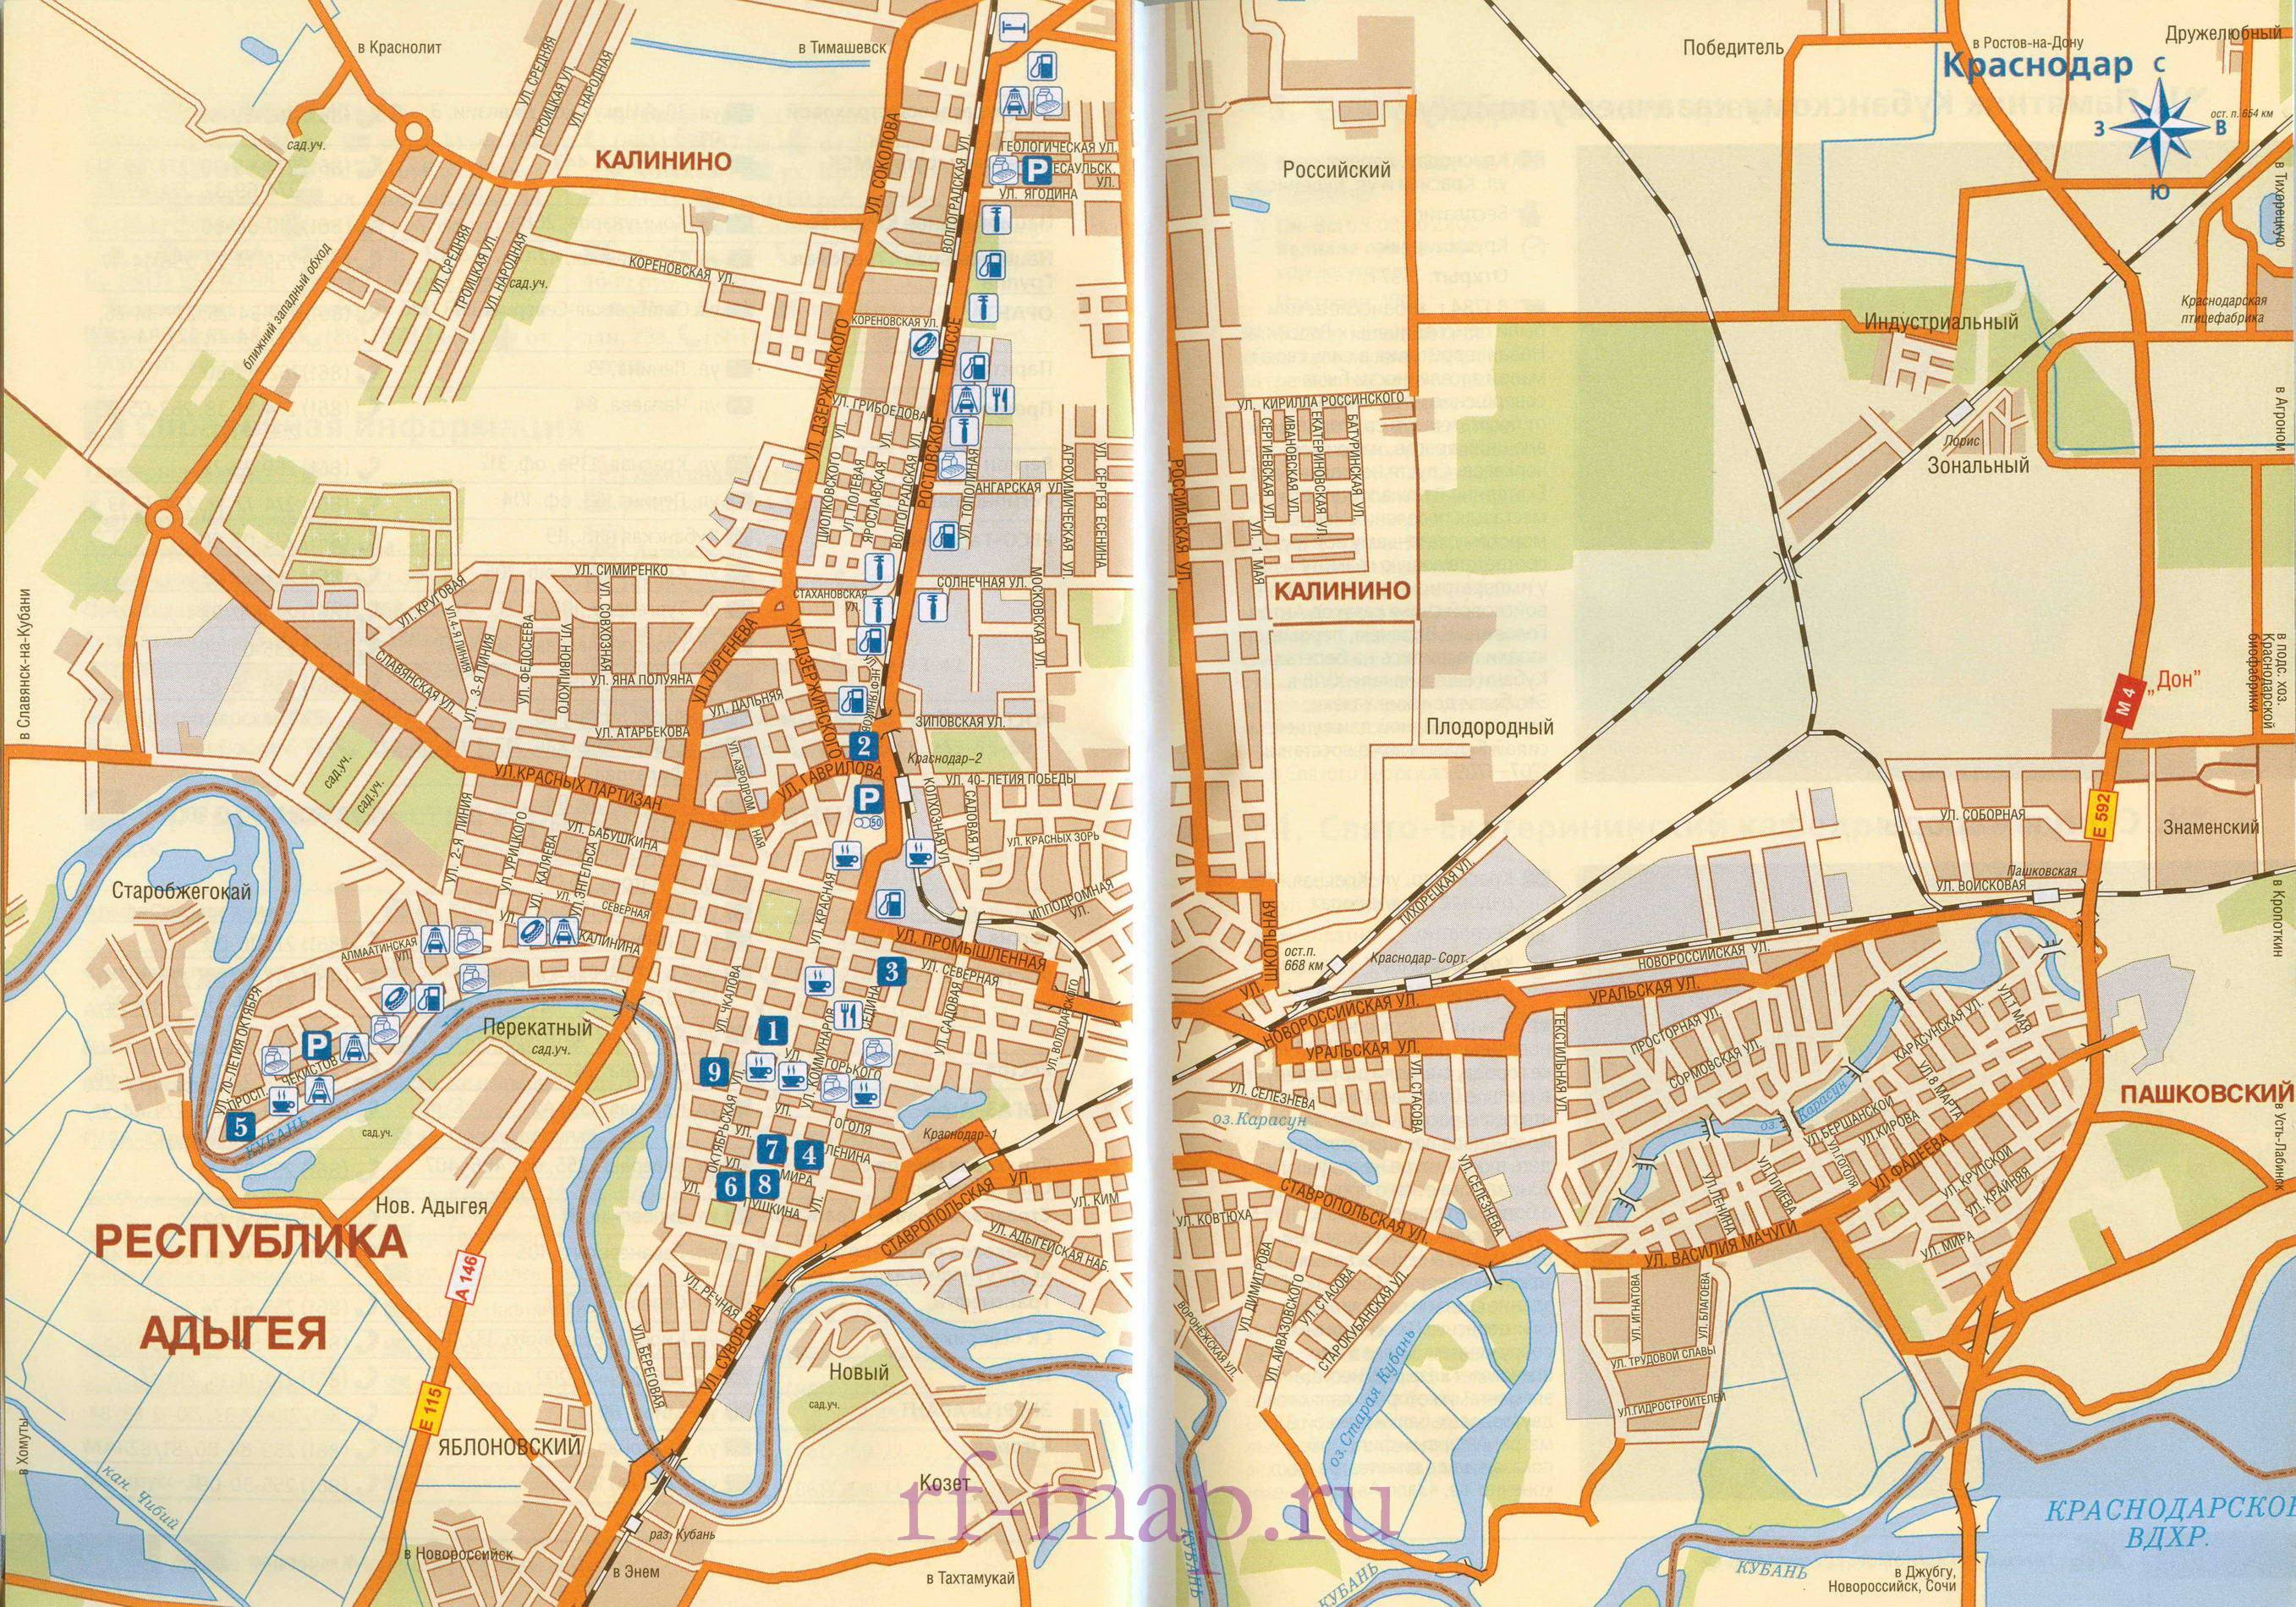 Основные достопримечательности краснодара на карте, что посмотреть. пешеходная экскурсия, маршрут по краснодару